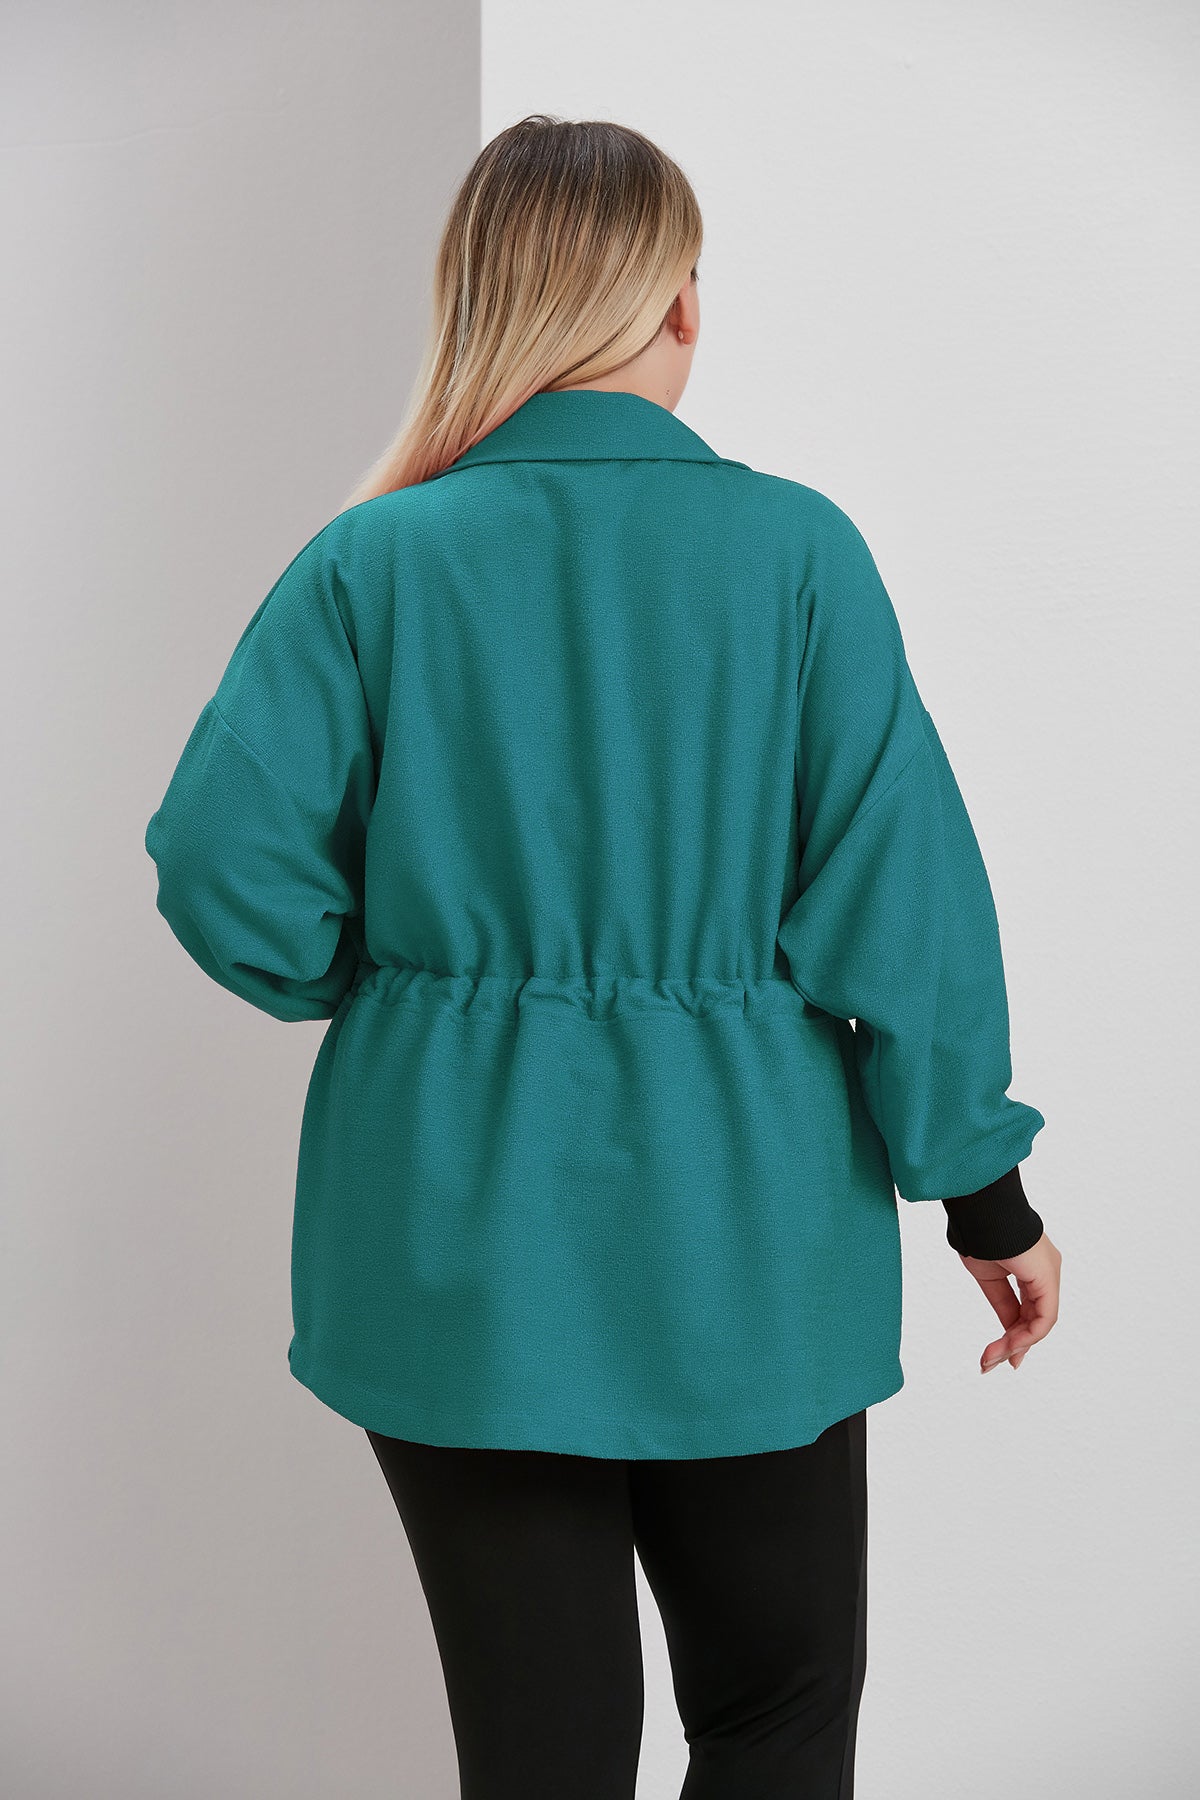 Γυναικείο μπουφάν από μπουκλέ σε μεγάλα μεγέθη - Πράσινο